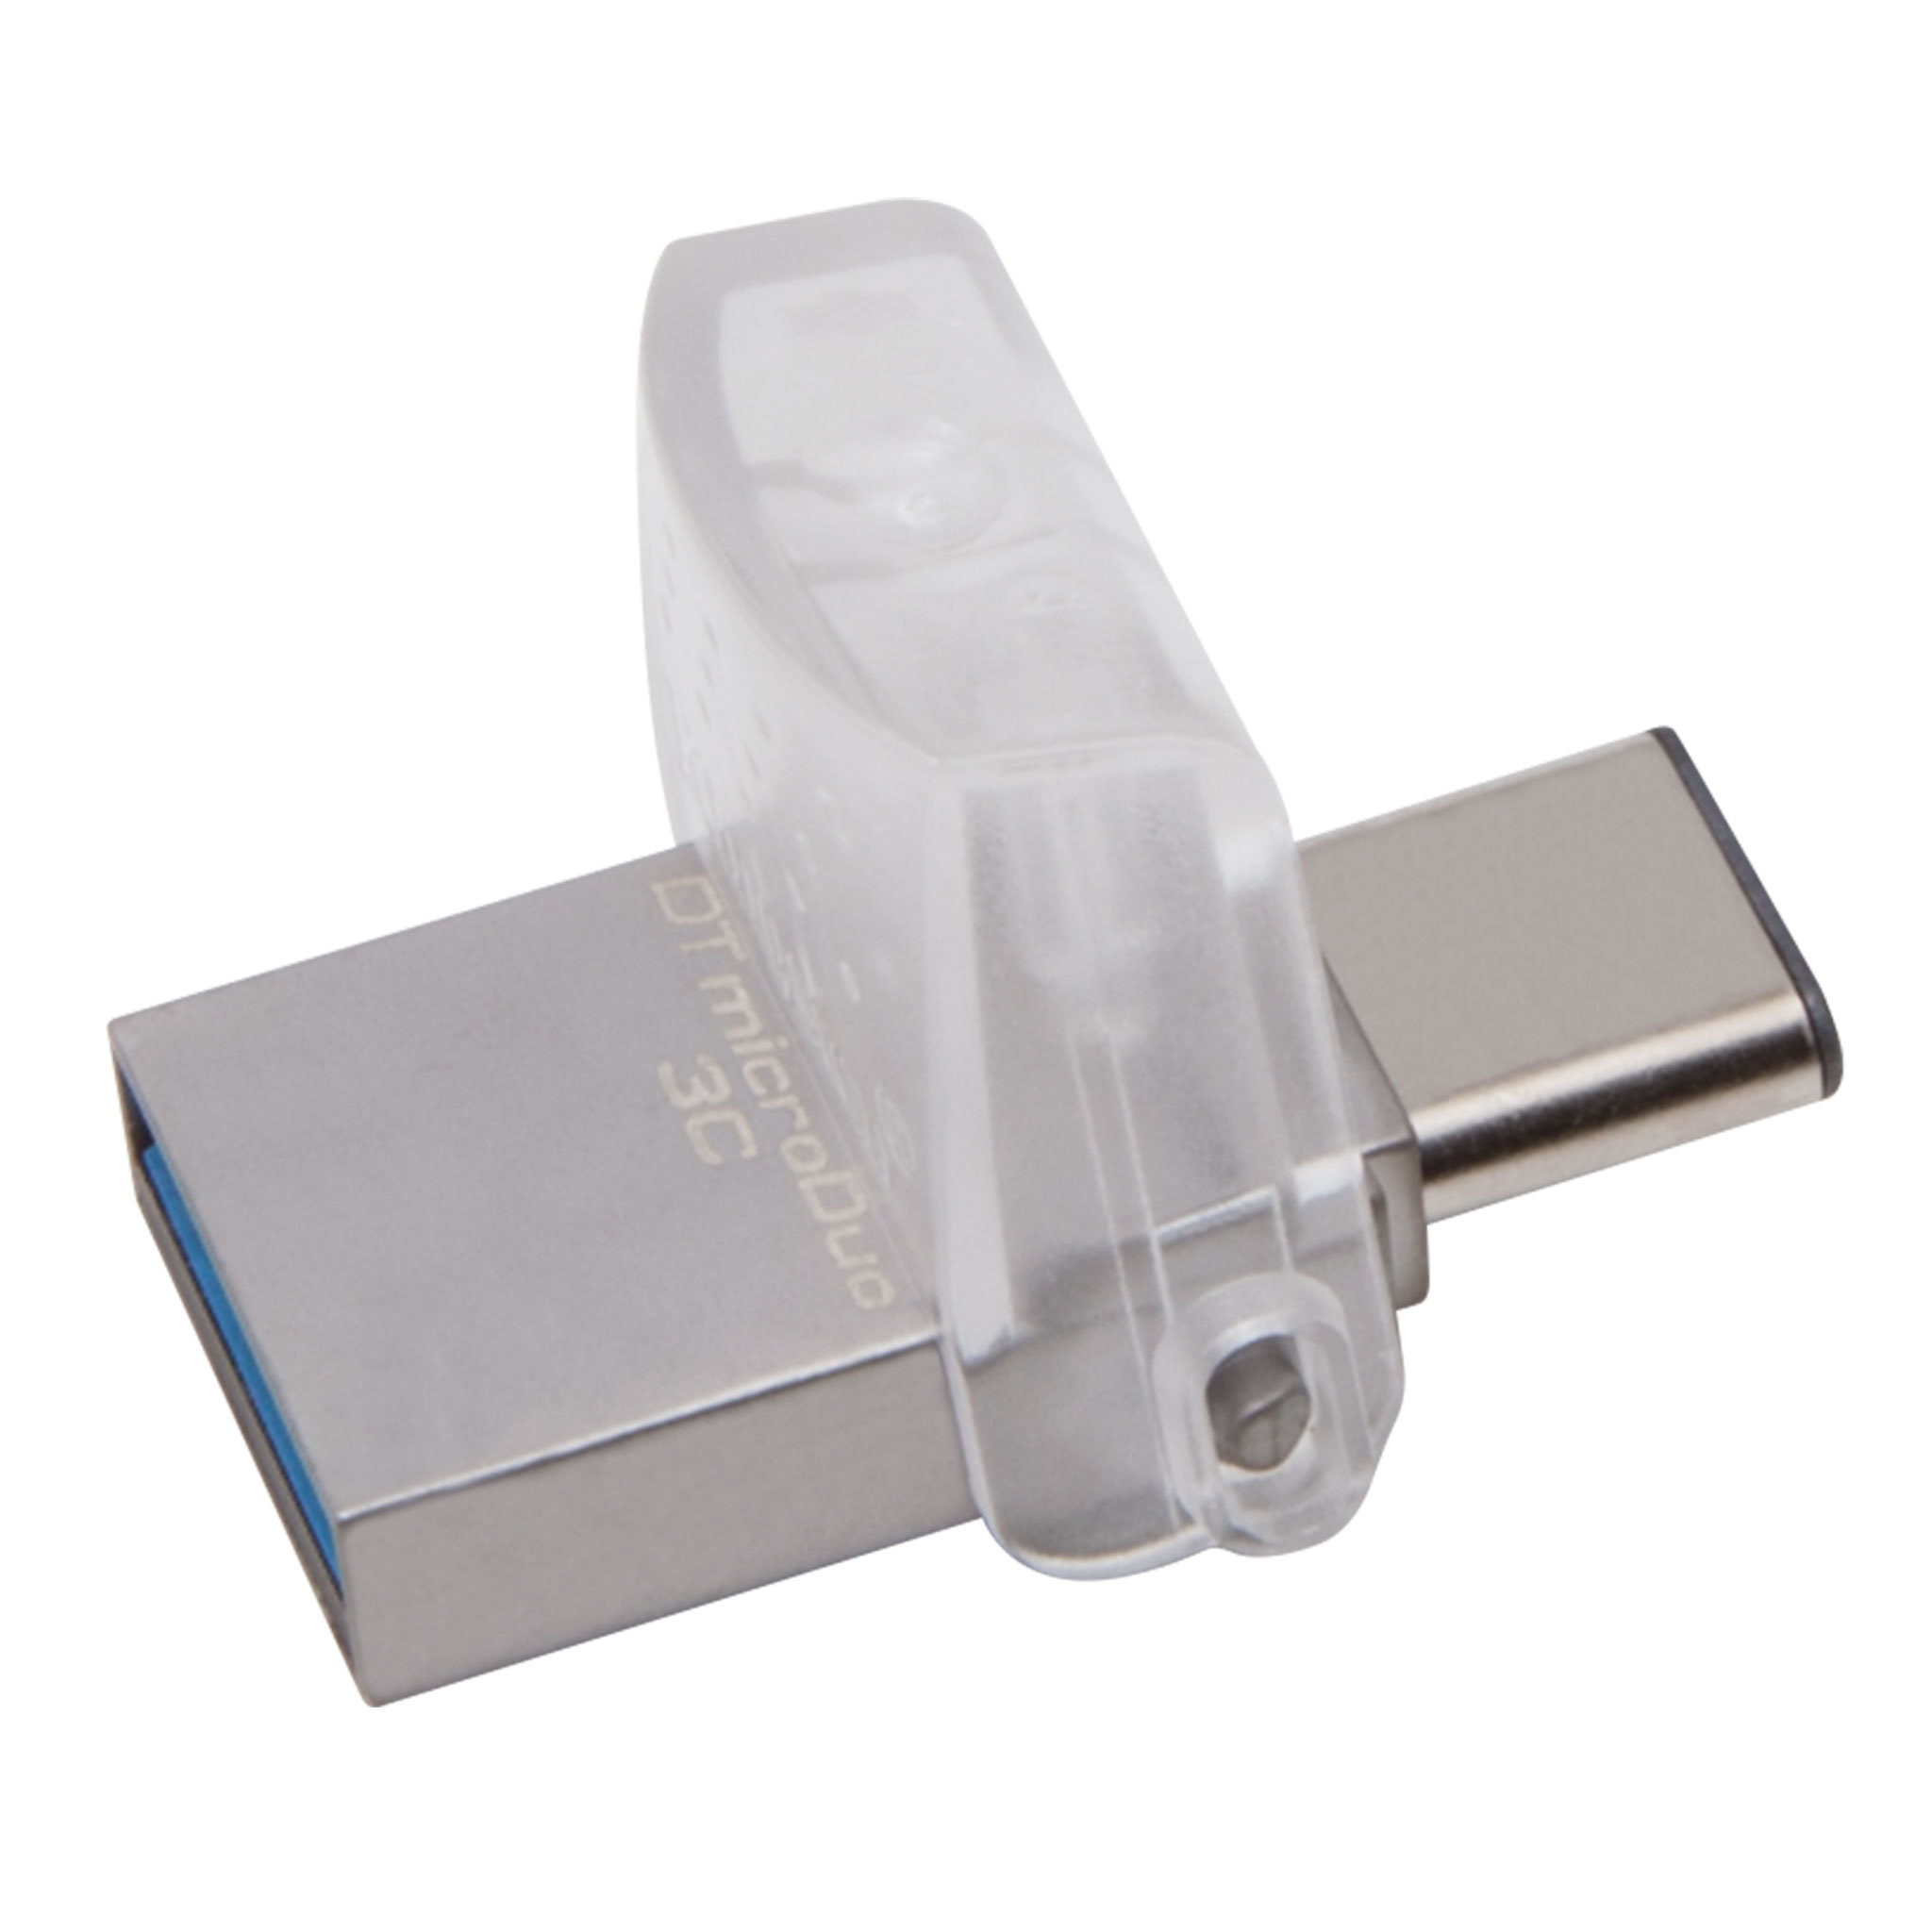 Pamięć Kingston 64GB Data Traveler MicroDuo 3C USB 3.1 DTDUO3C/64GB szary widok na dwie opcje połączeń USB A i USB C